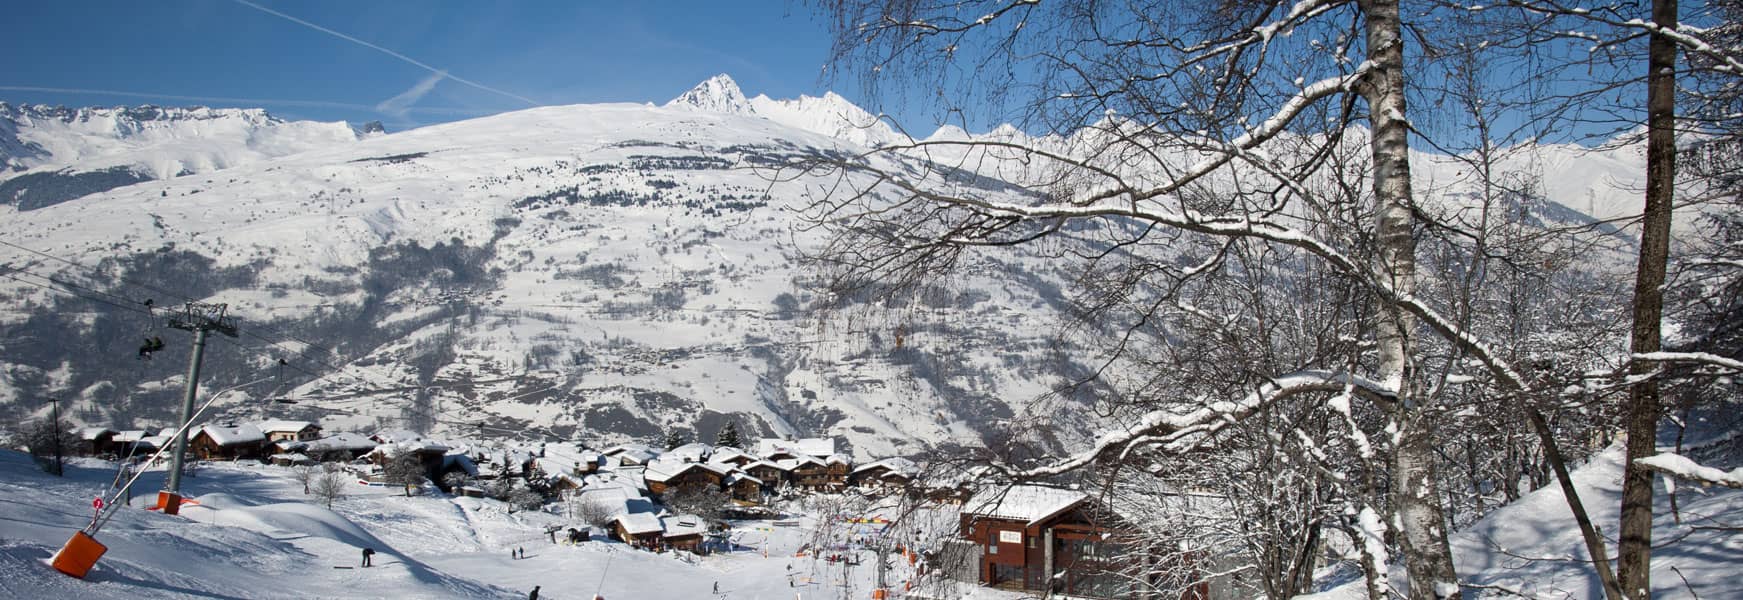 Location Ski Intersport La Plagne Les Coches